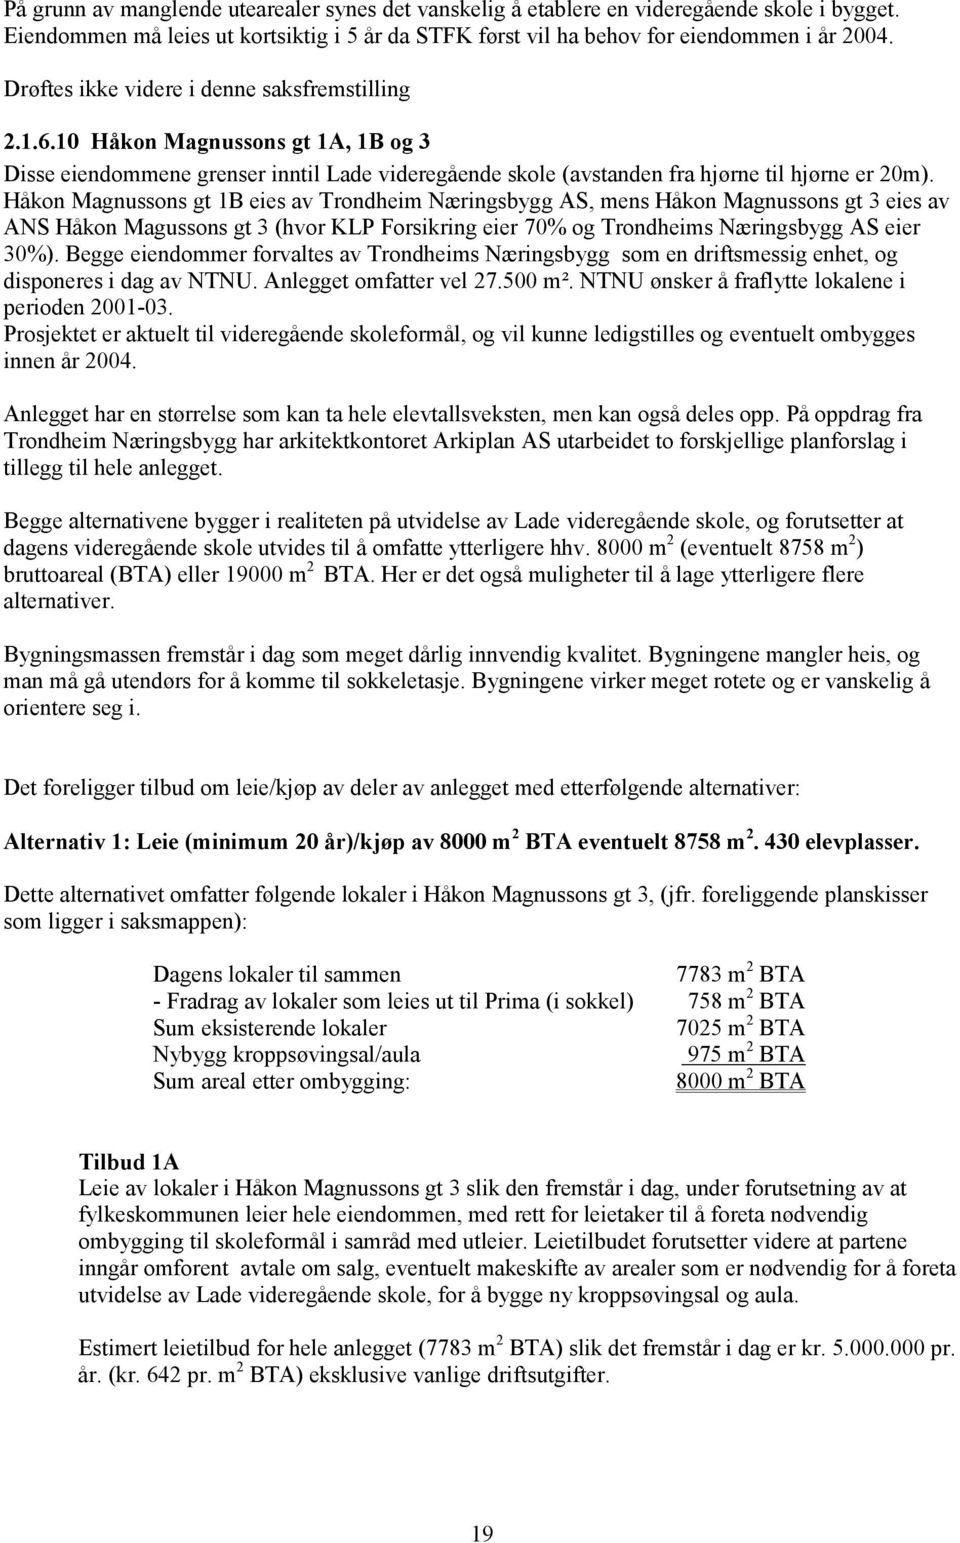 Håkon Magnussons gt 1B eies av Trondheim Næringsbygg AS, mens Håkon Magnussons gt 3 eies av ANS Håkon Magussons gt 3 (hvor KLP Forsikring eier 70% og Trondheims Næringsbygg AS eier 30%).